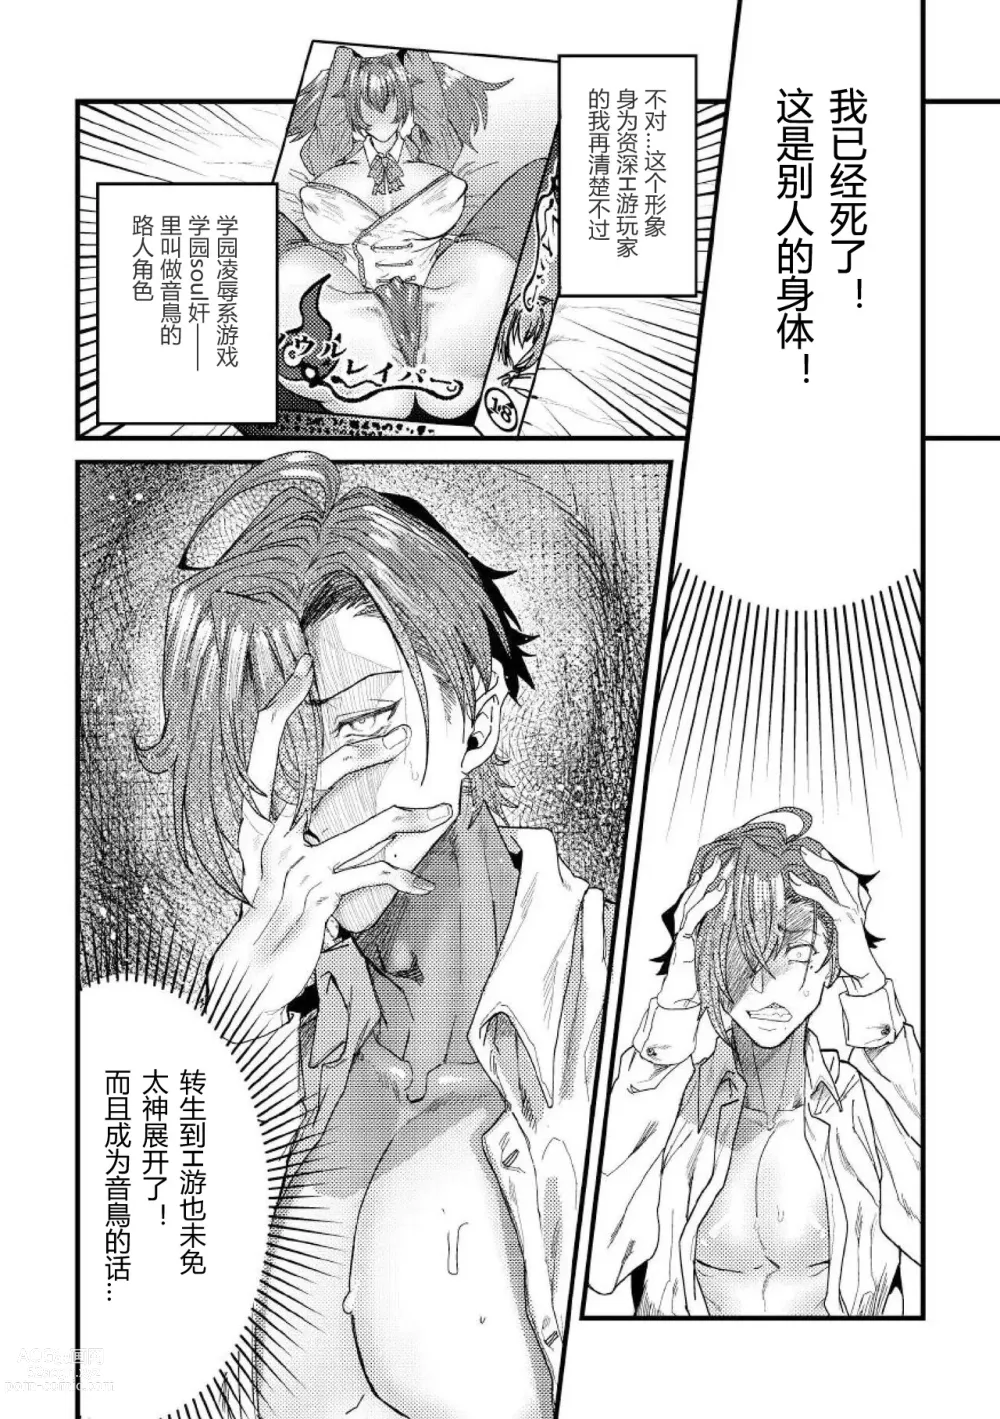 Page 6 of manga 转生校园黄油然后上位女主肉便器堕